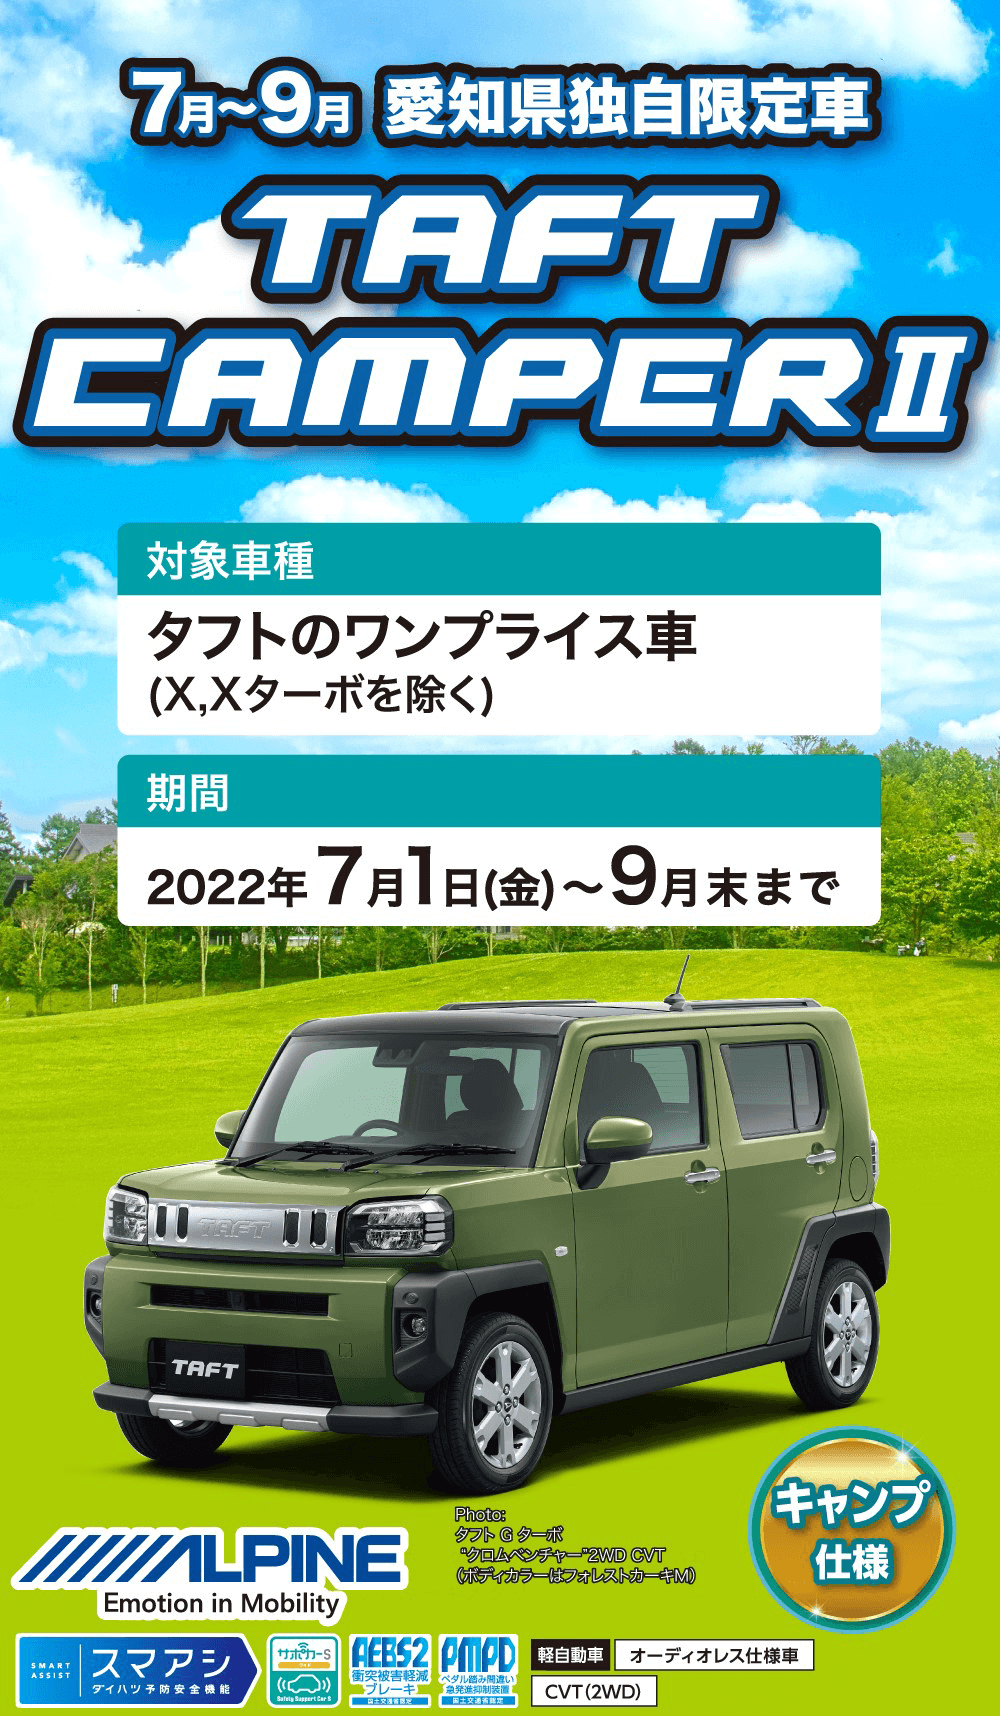 7月~9月 愛知県独自限定車TAFTCAMPER2キャンプ 仕様　対象車種 タフトのワンプライス車 (X,Xターボを除く)　期間2022年7月1日(金)~9月末まで WLPINE